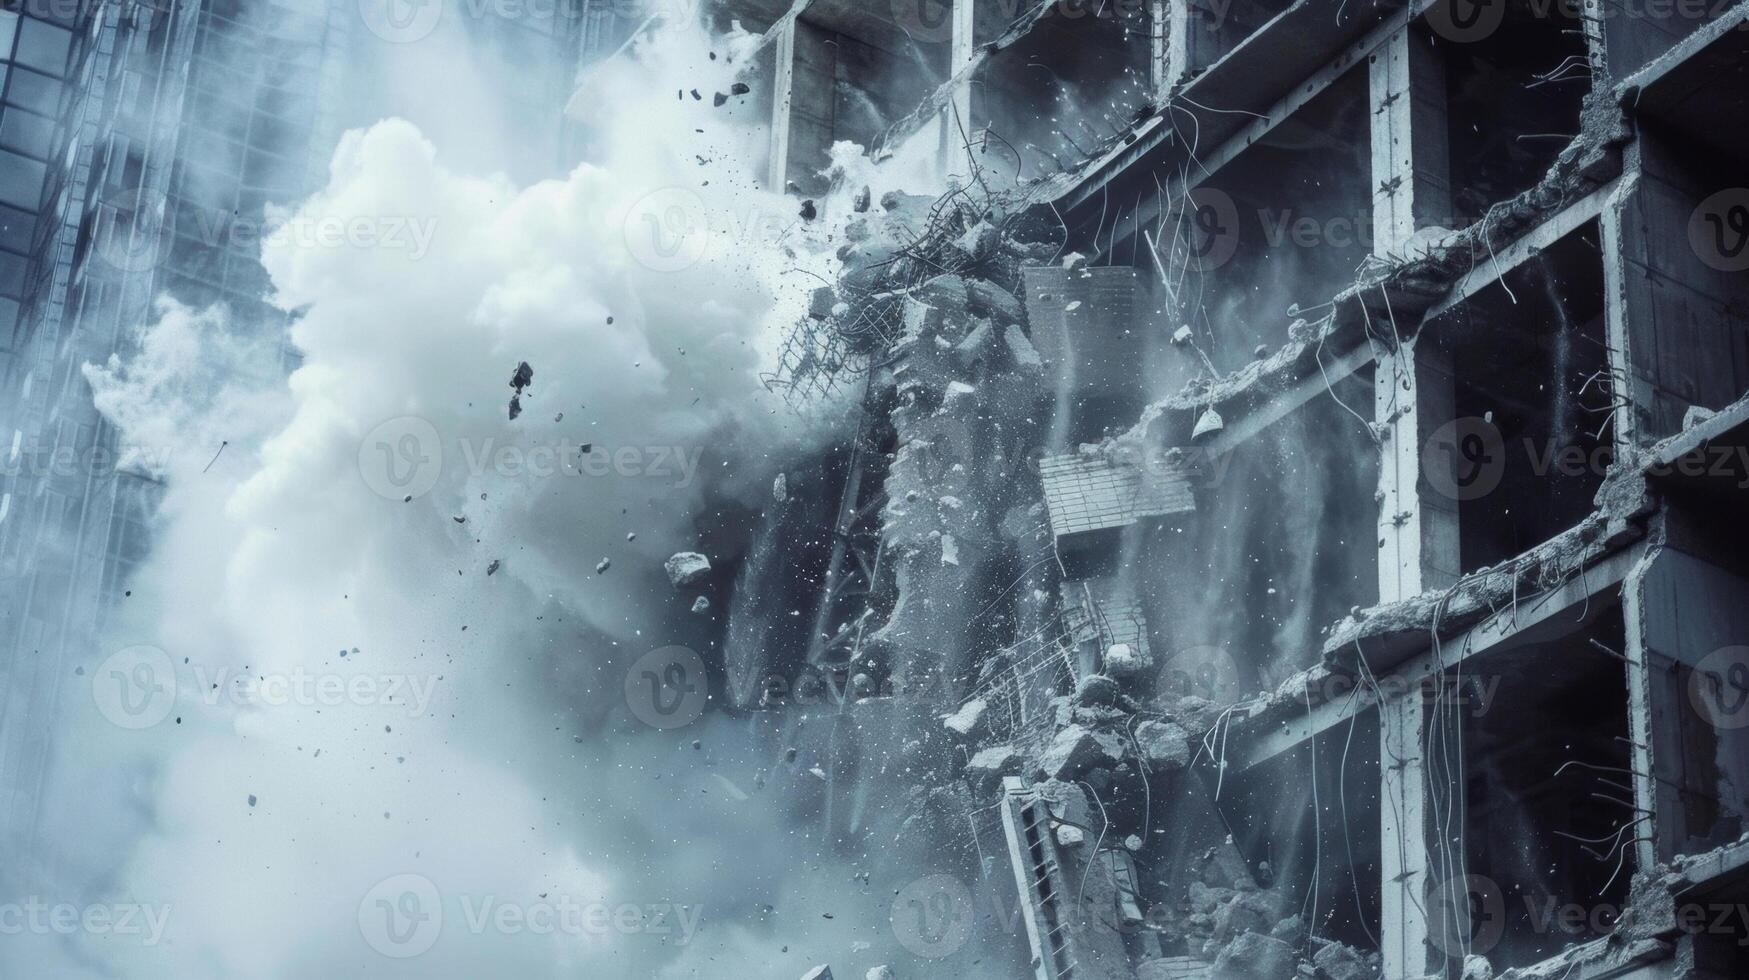 le dernier restant mur de une démoli bâtiment étant amené vers le bas par une naufrage Balle dans une spectaculaire final coup photo